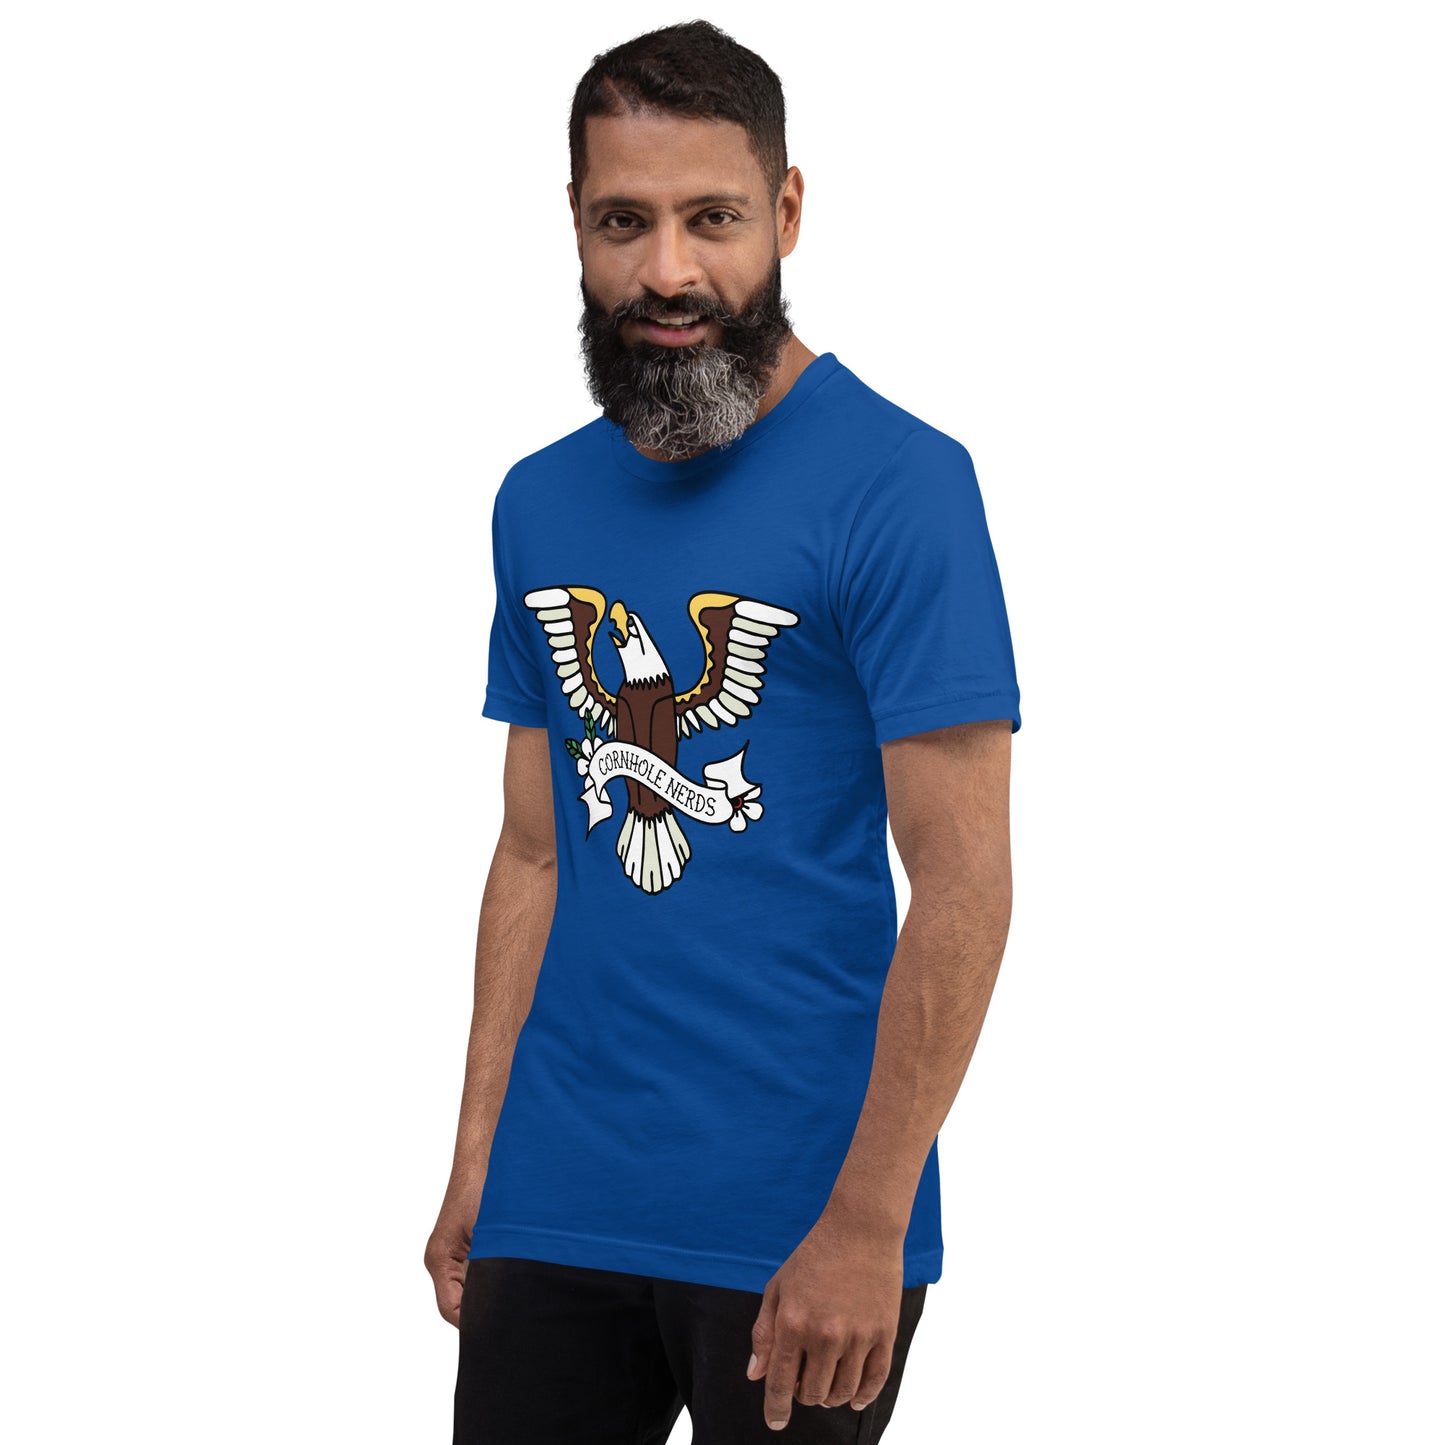 Cornhole Nerds Eagle logo Unisex t-shirt